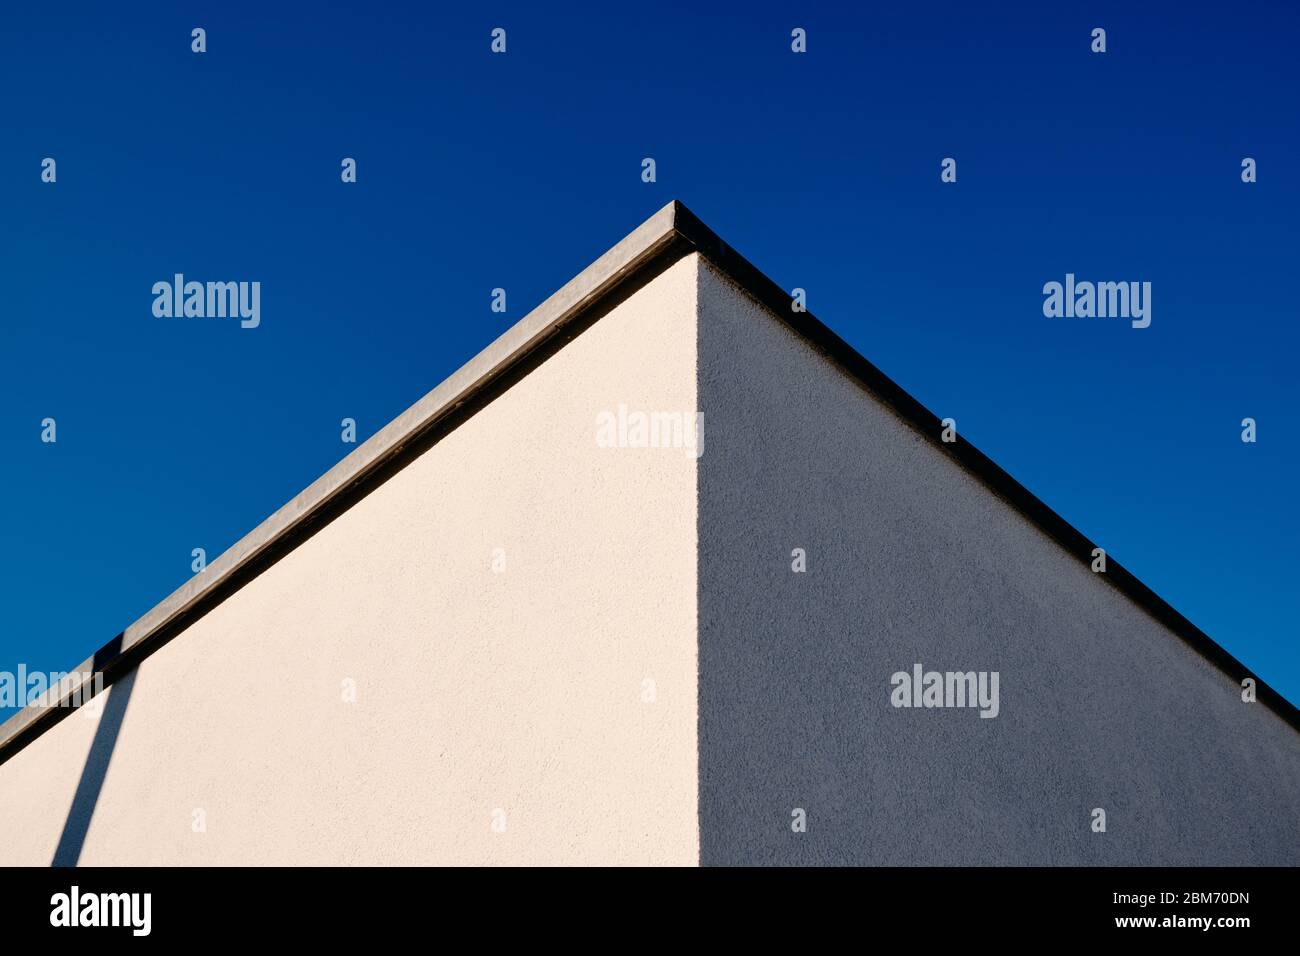 Abstrakte Architektur Aufnahme von zwei Wänden und einer Ecke eines modernen Hauses mit weißem Putz gegen klaren blauen Himmel. Gesehen in Deutschland im März. Stockfoto